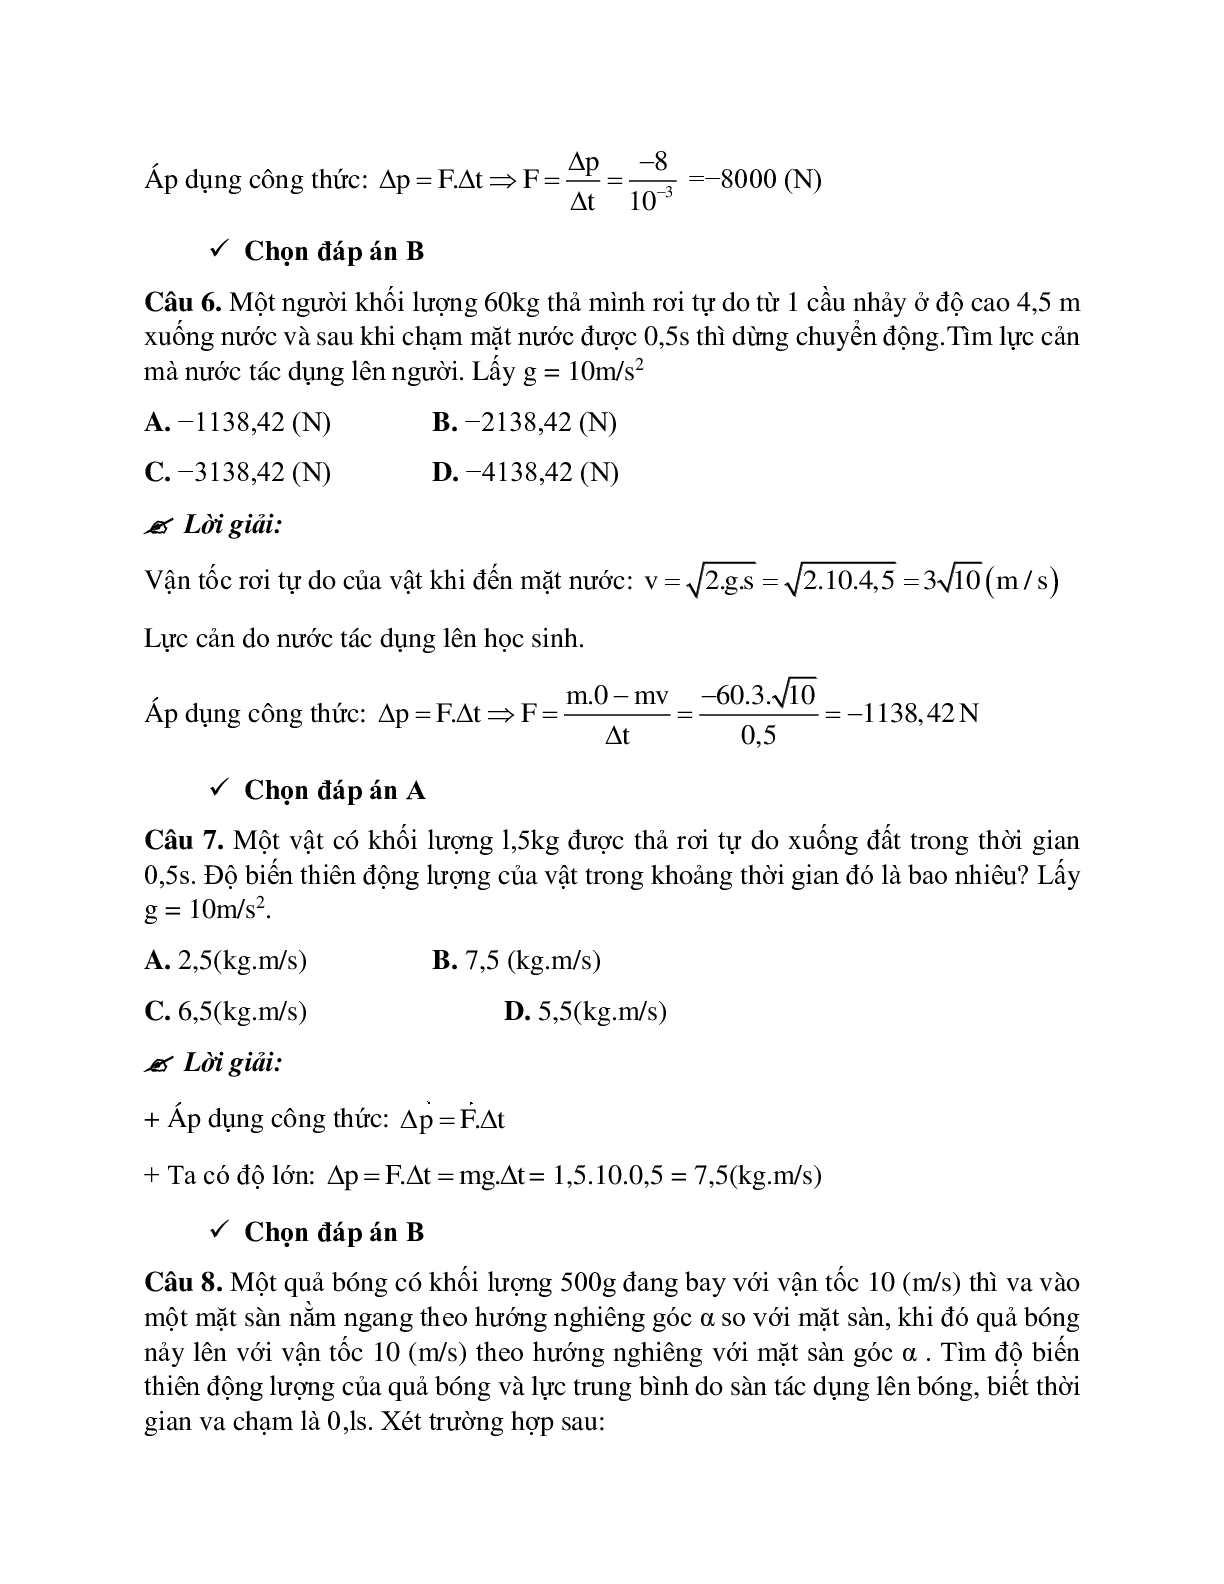 Phương pháp giải và bài tập về Xác định tổng động lượng, độ biến thiên động lượng và lực tác dụng (trang 4)